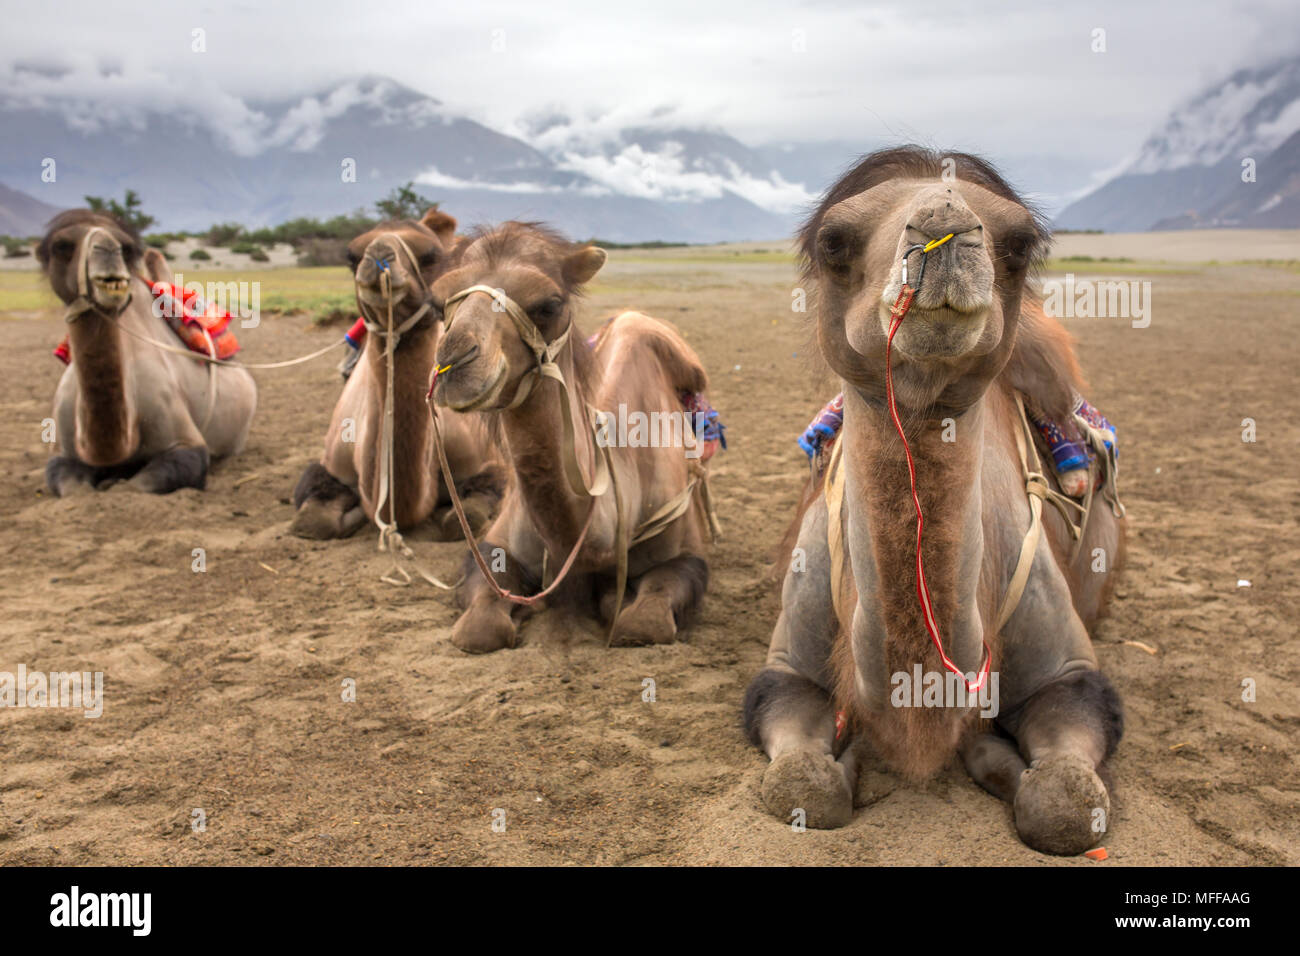 Camel safari in Nubra valley in Ladakh, India Stock Photo